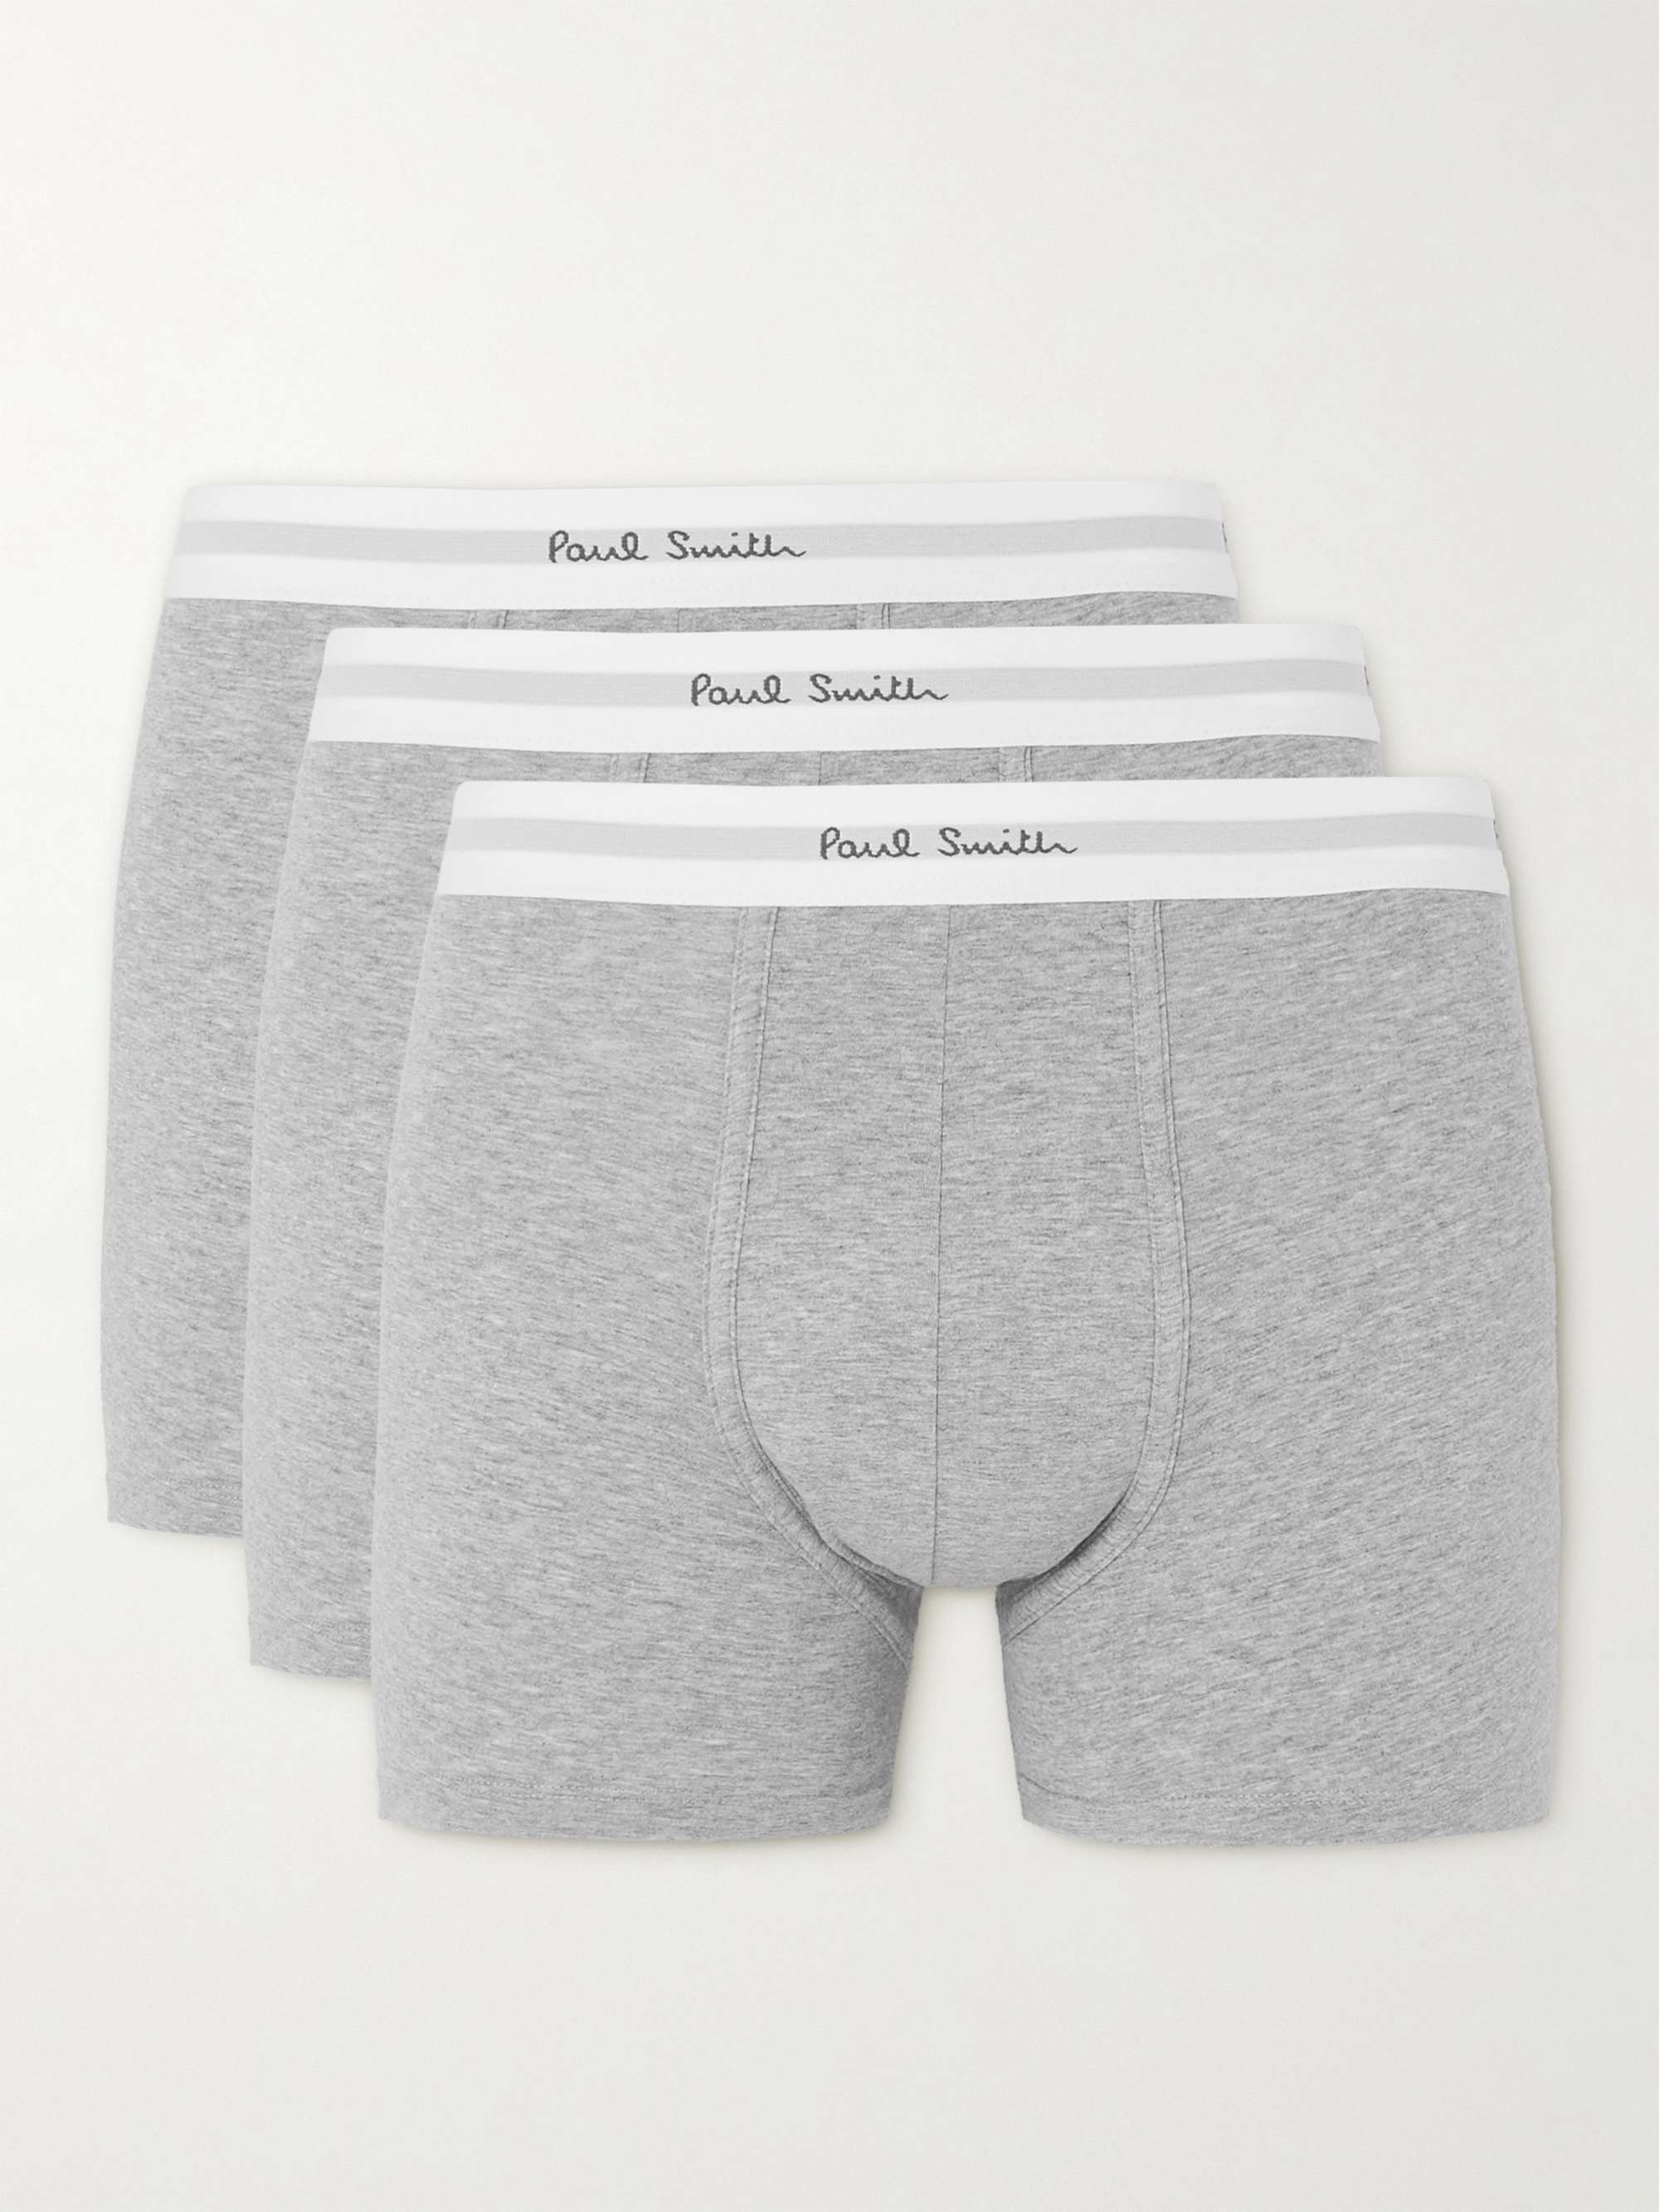 폴 스미스 박서 팬티 남성 속옷 3팩 (선물 추천) Paul Smith Three-Pack Stretch-Cotton Boxer Briefs,Gray